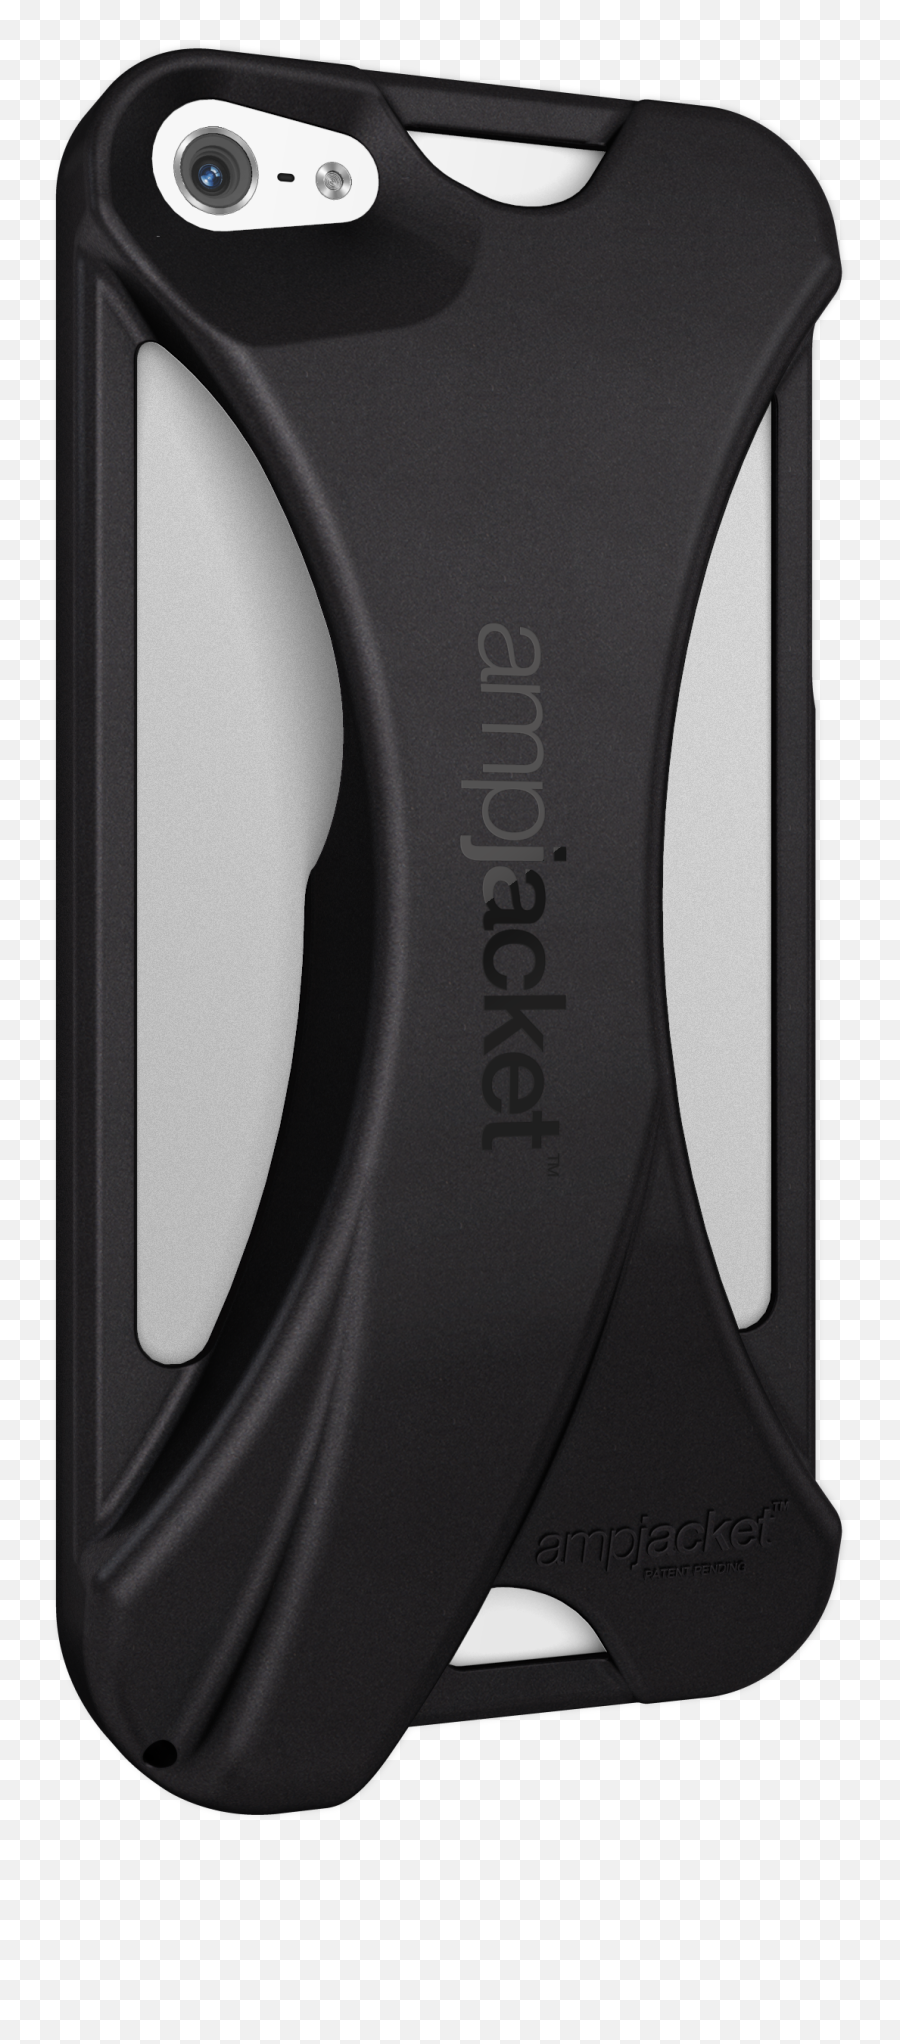 Ampjacket Iphone 5 Case By Kubxlab - Lotus823 Emoji,Iphone 5 Png